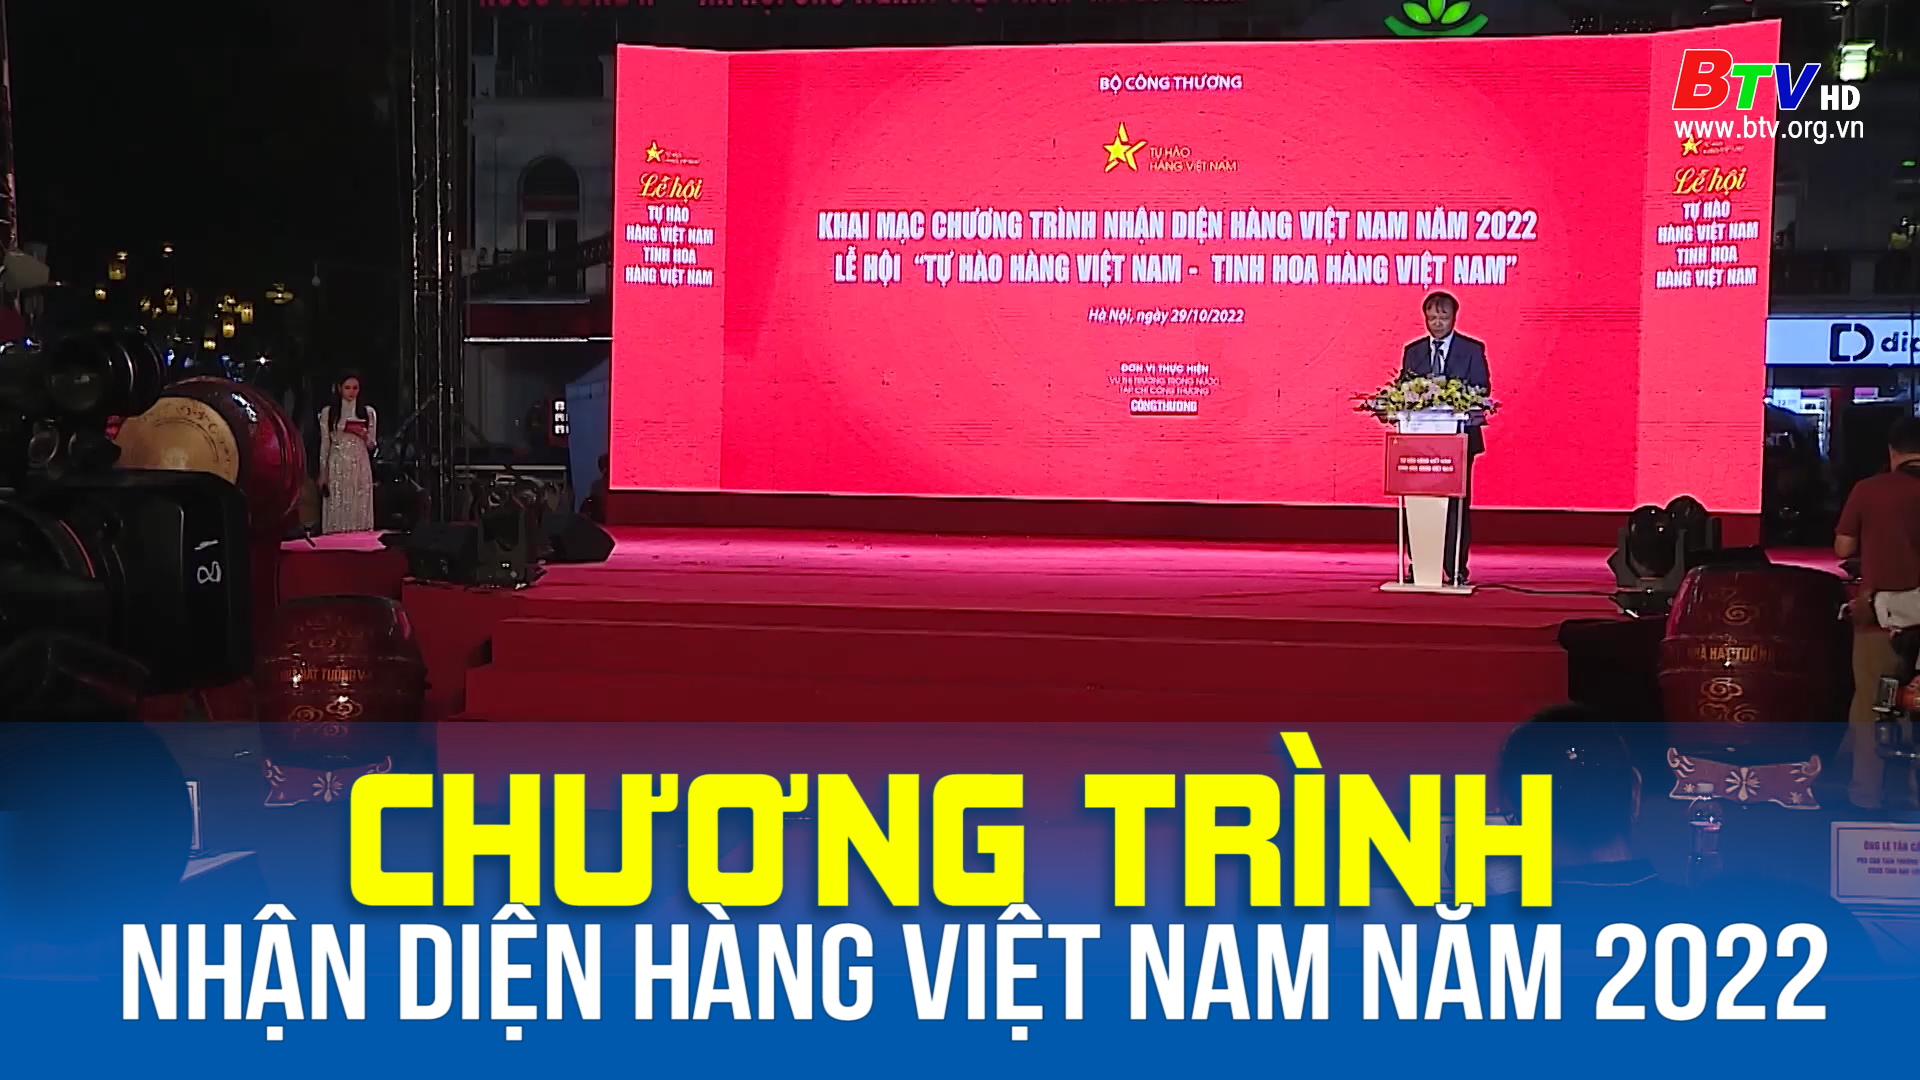 Chương trình nhận diện hàng Việt Nam năm 2022 